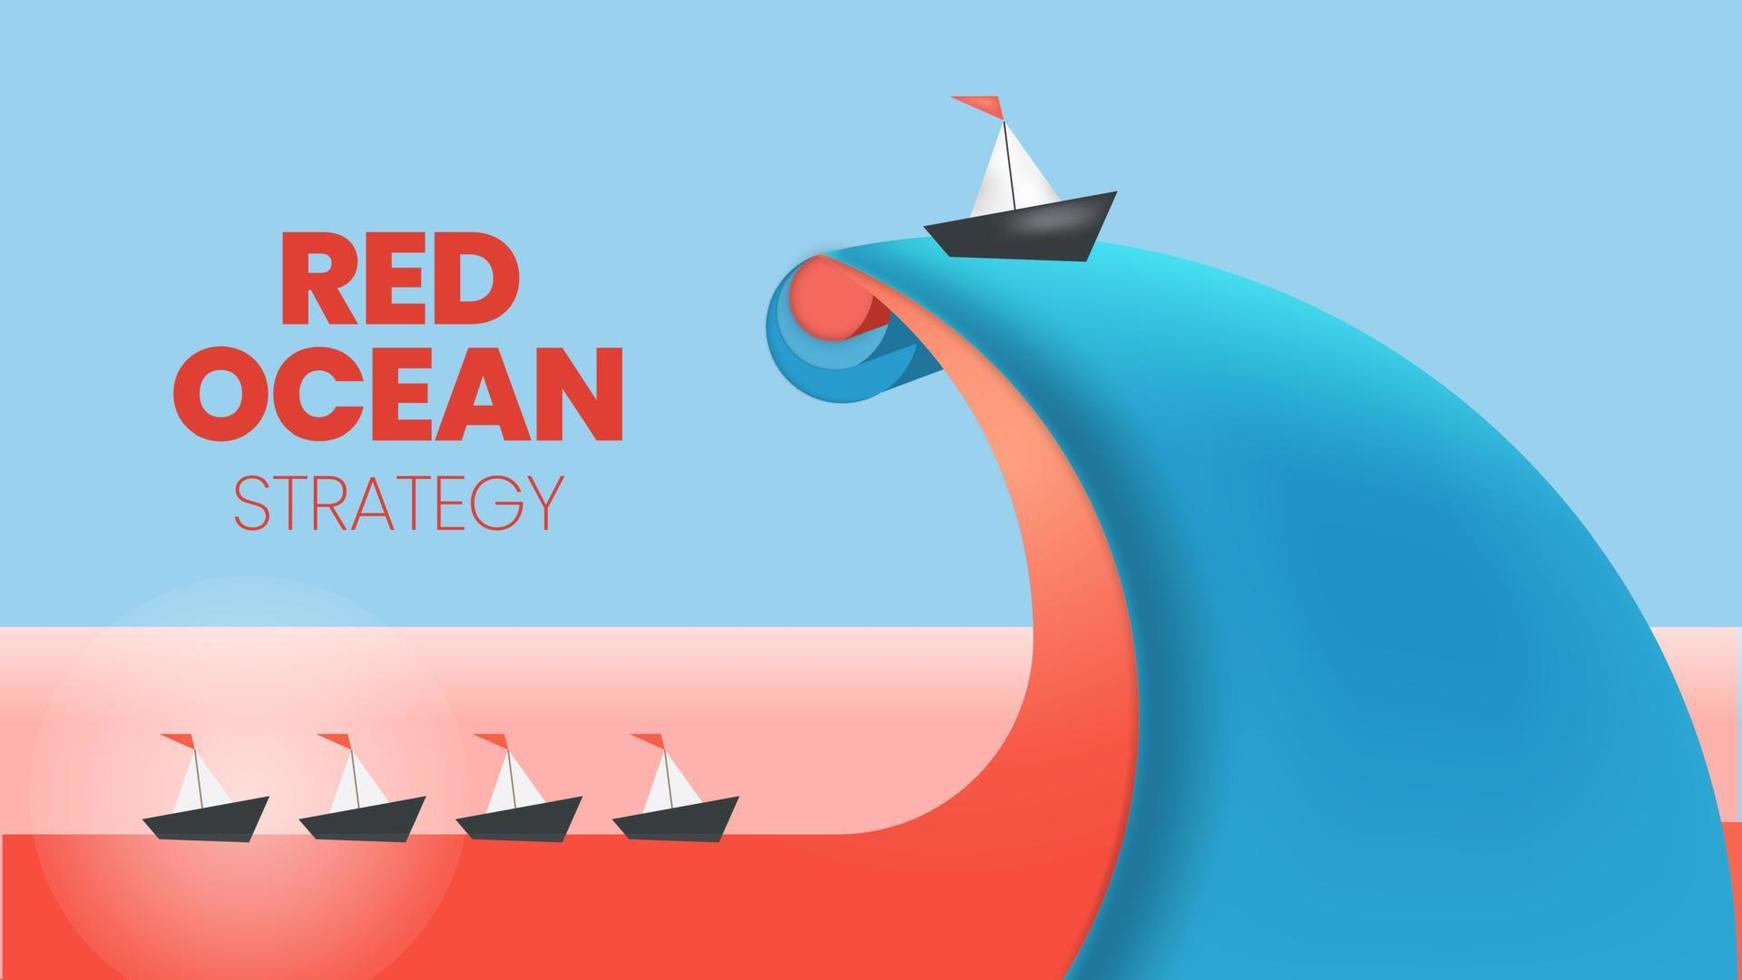 la presentación del concepto de estrategia del océano azul es un elemento infográfico vectorial del marketing de nicho. el mar rojo tiene una competencia masiva sangrienta y el lado azul pionero tiene más ventajas y oportunidades vector